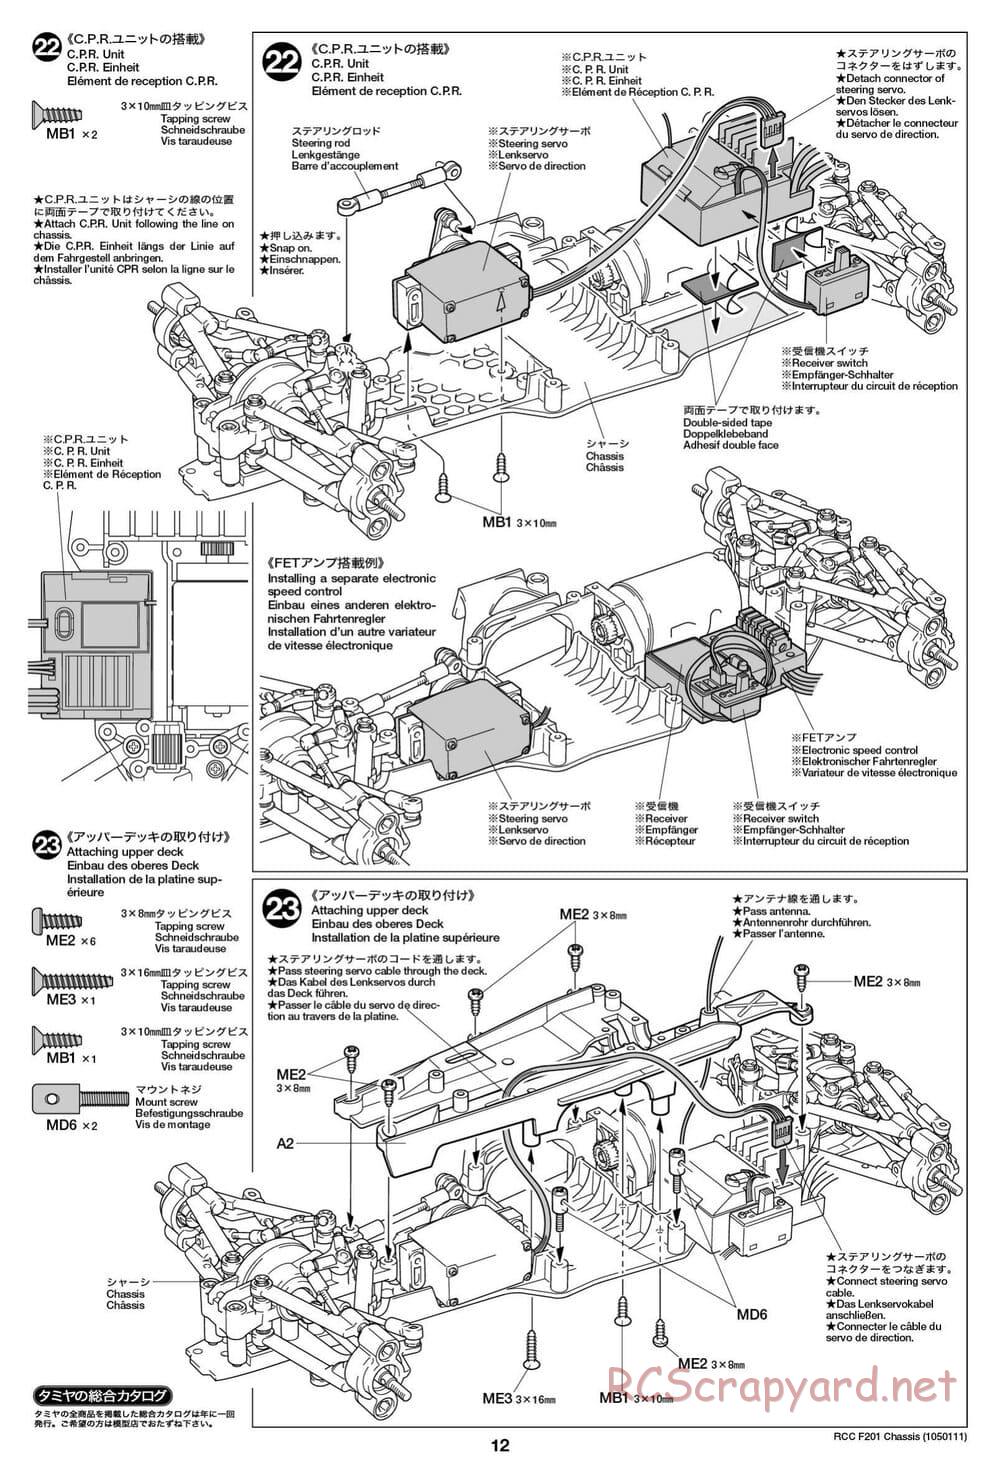 Tamiya - F201 Chassis - Manual - Page 12